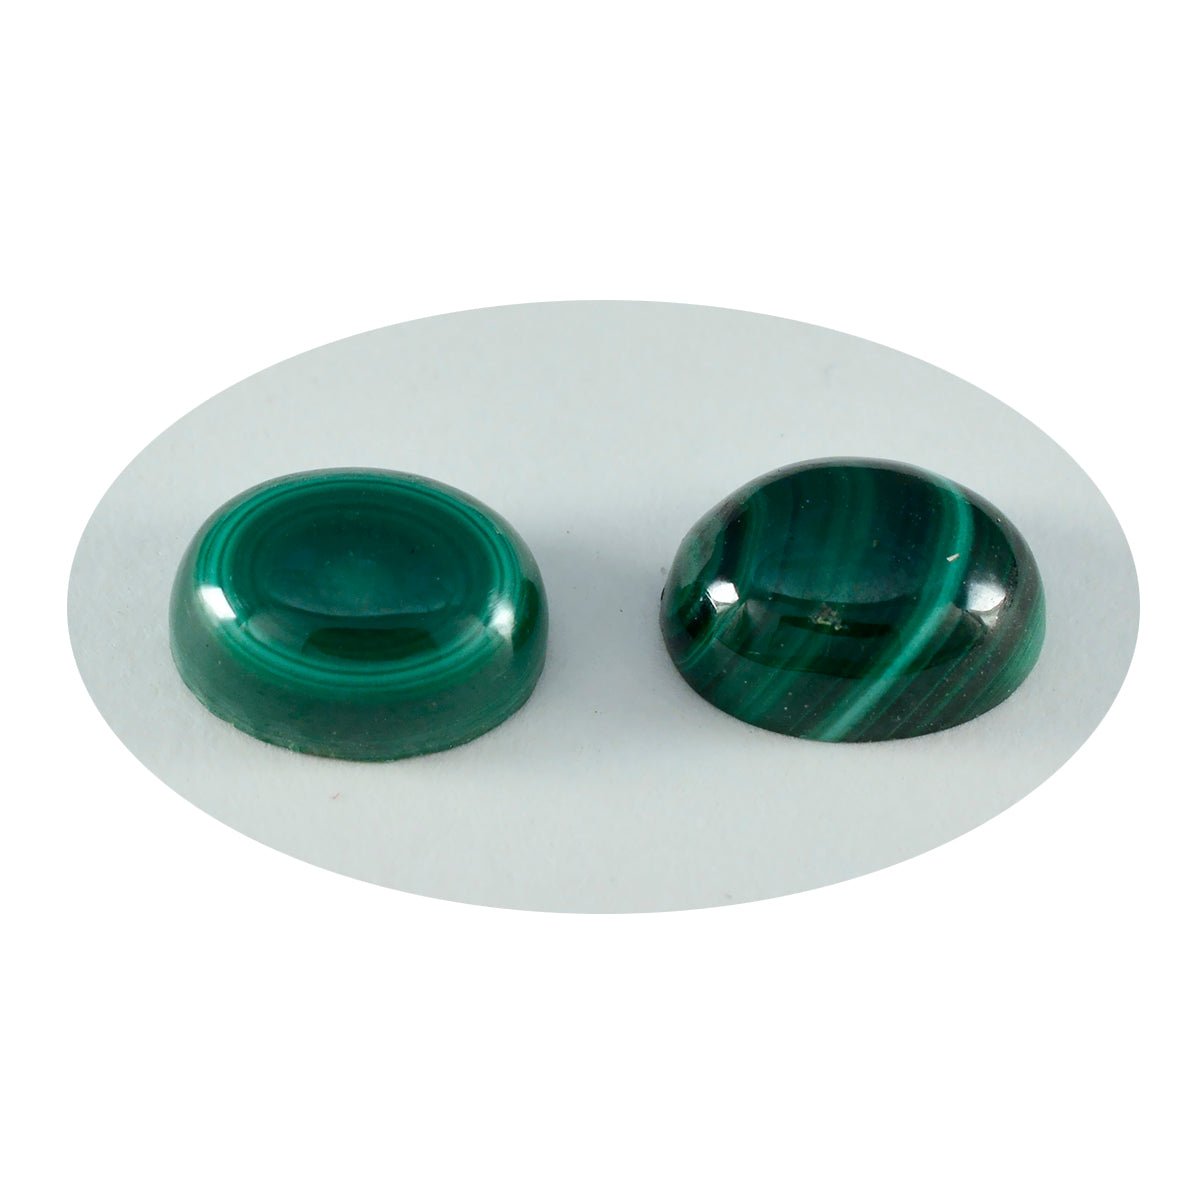 Riyogems 1pc cabochon malachite verte 7x9 mm forme ovale beauté qualité pierre précieuse